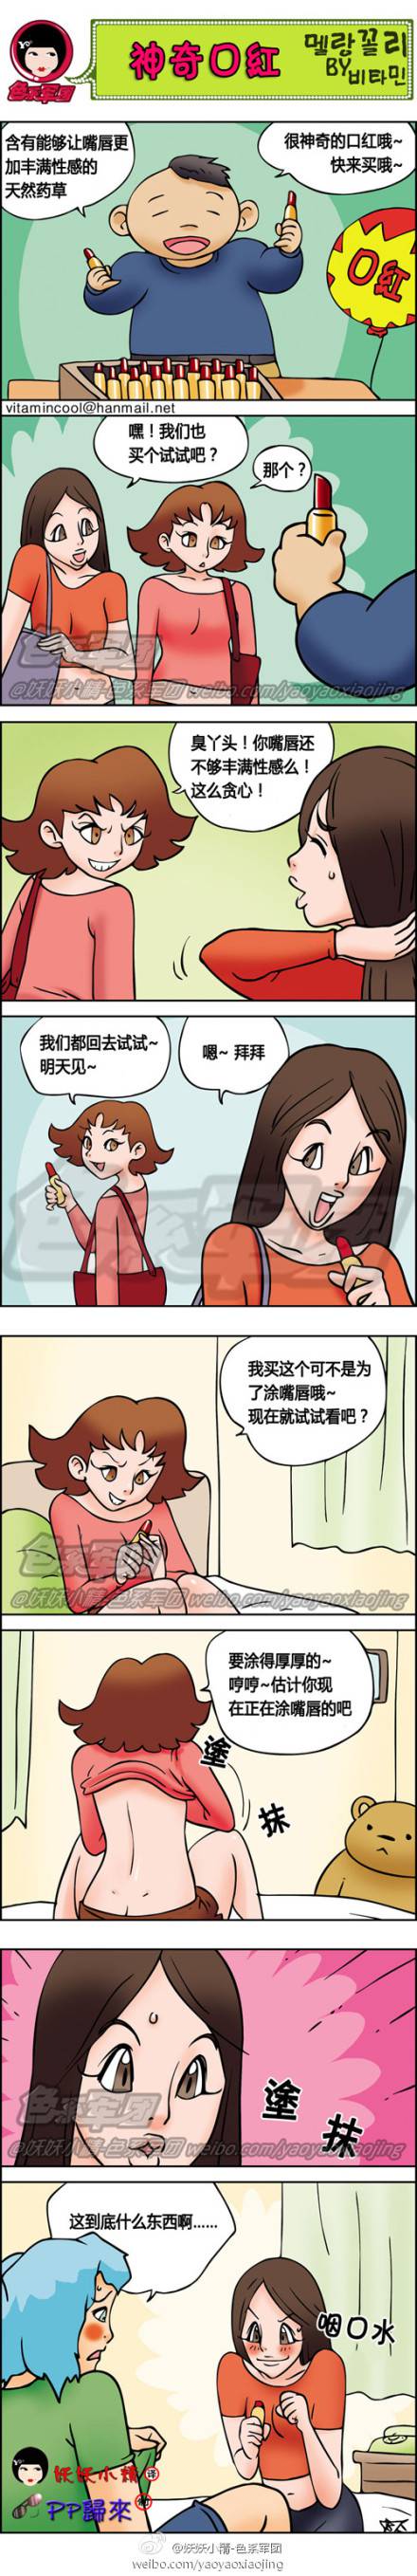 邪恶漫画爆笑囧图第41刊：时间